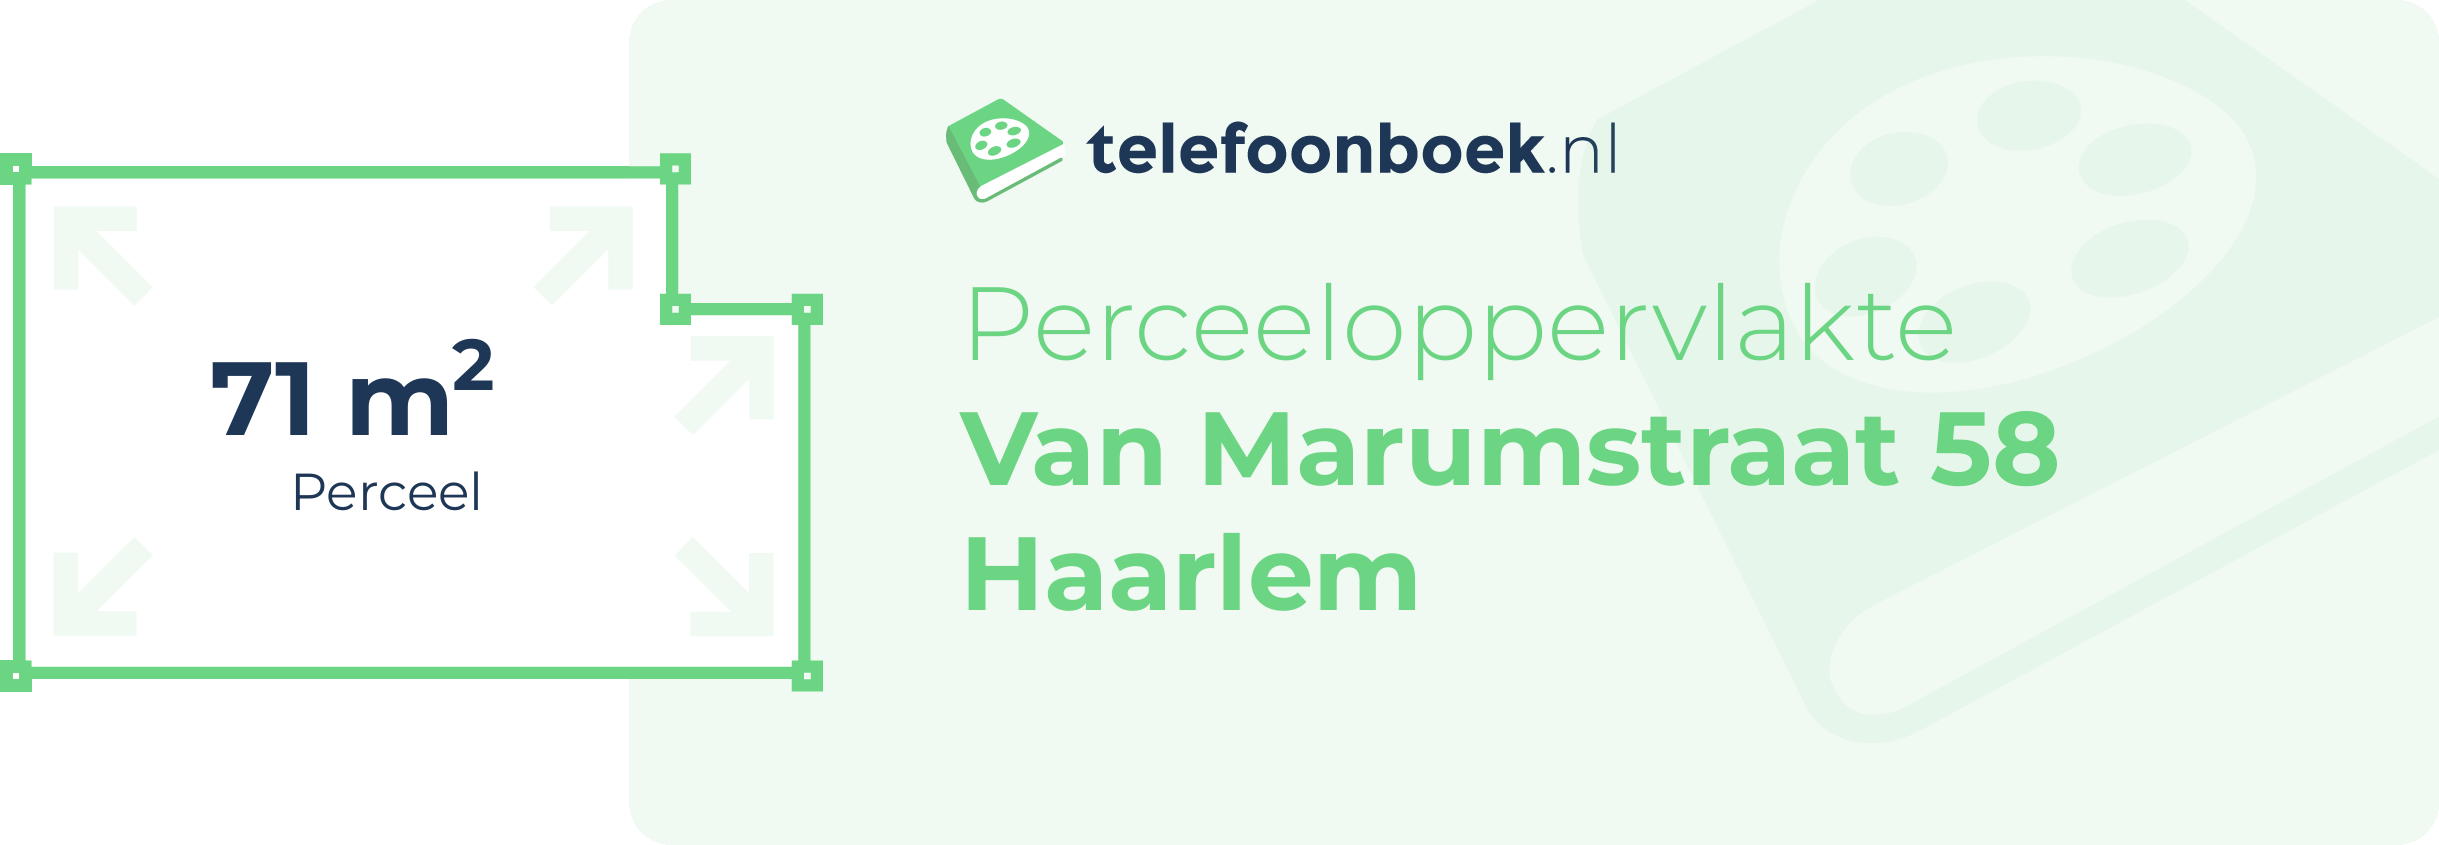 Perceeloppervlakte Van Marumstraat 58 Haarlem